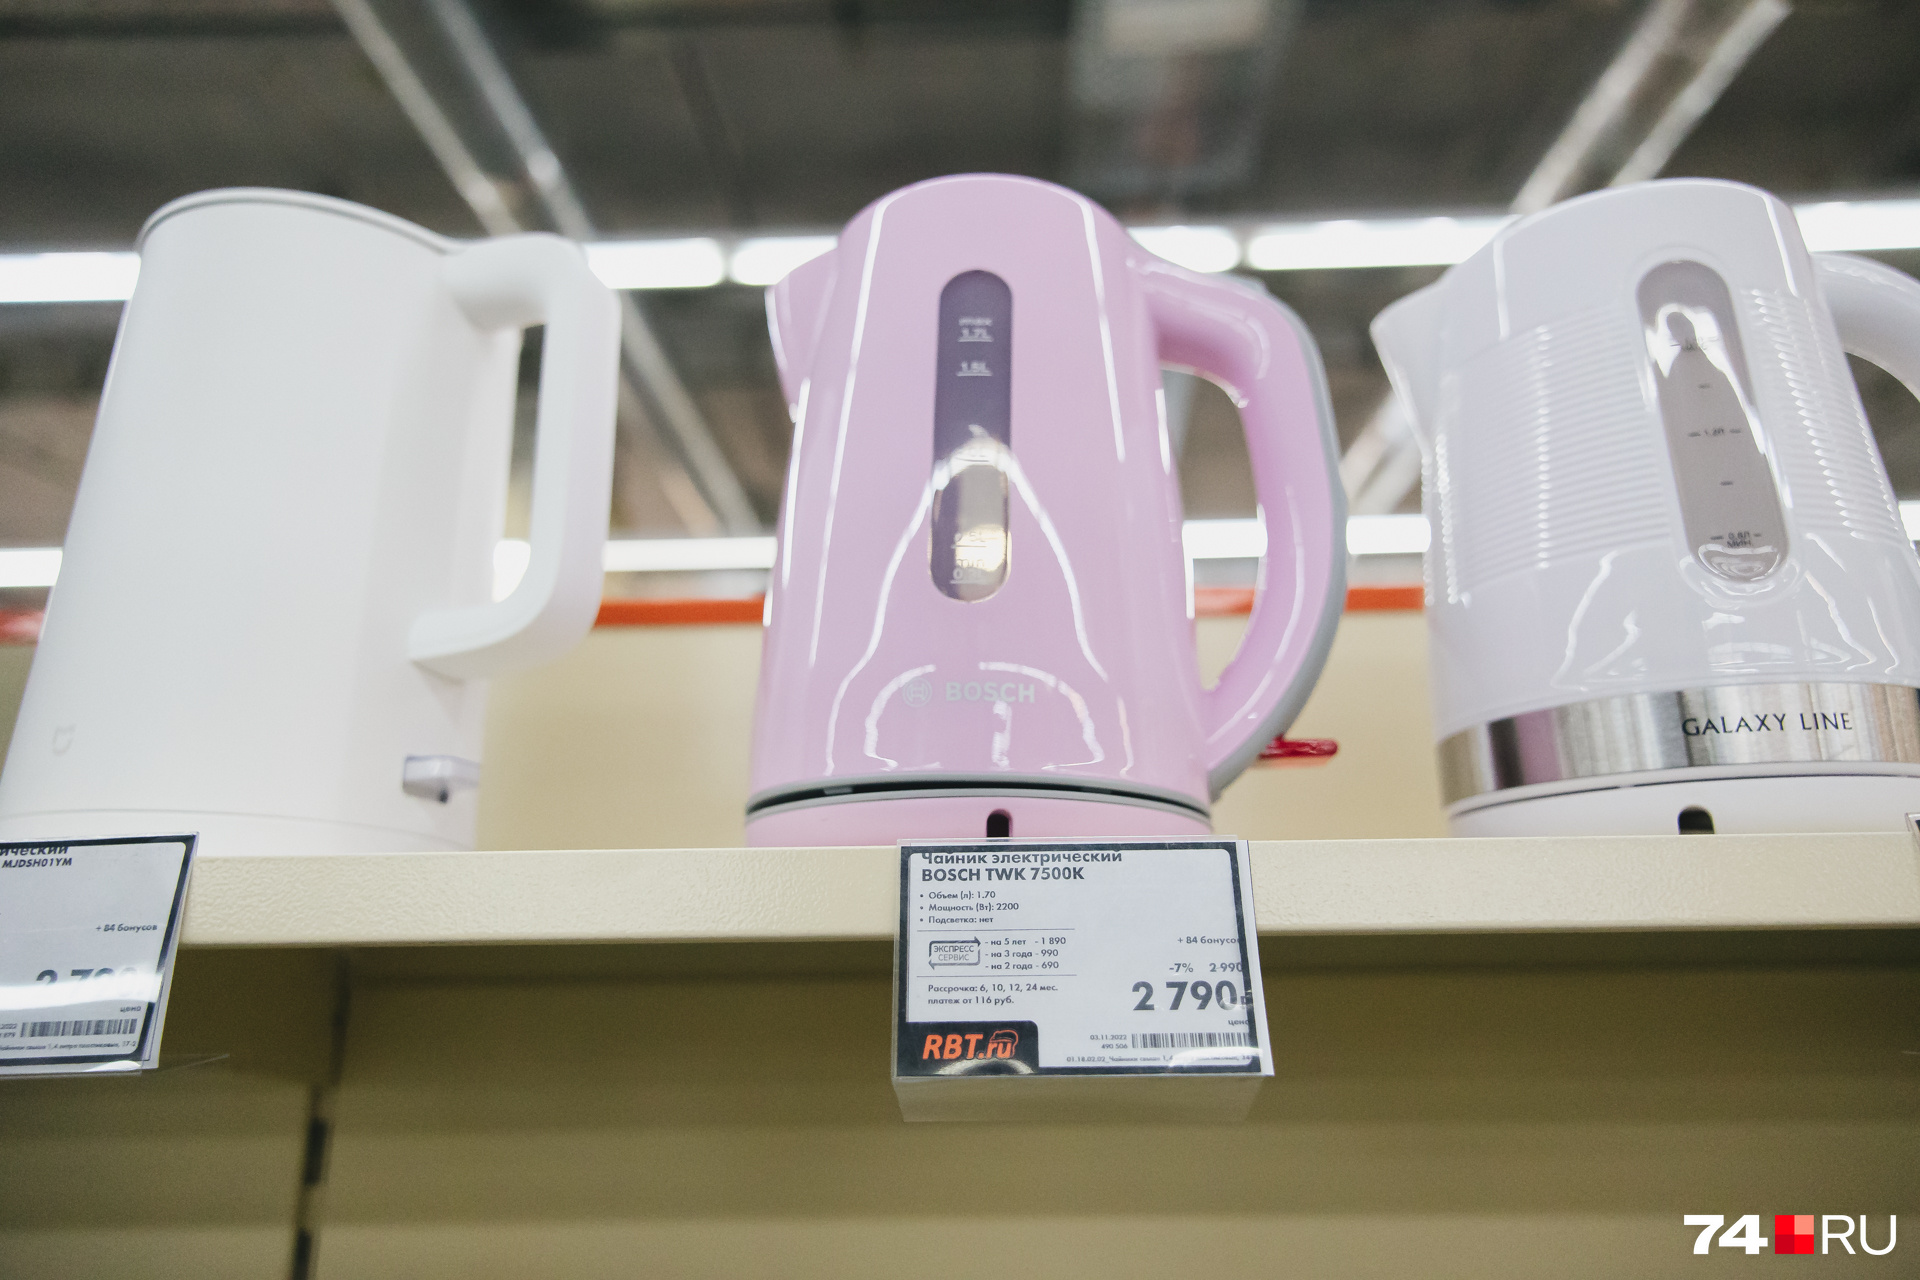 Розовый чайник Bosch — практически единственное, что нашлось на прилавке от этого производителя в РБТ. Видимо, никто не покупает из-за цвета